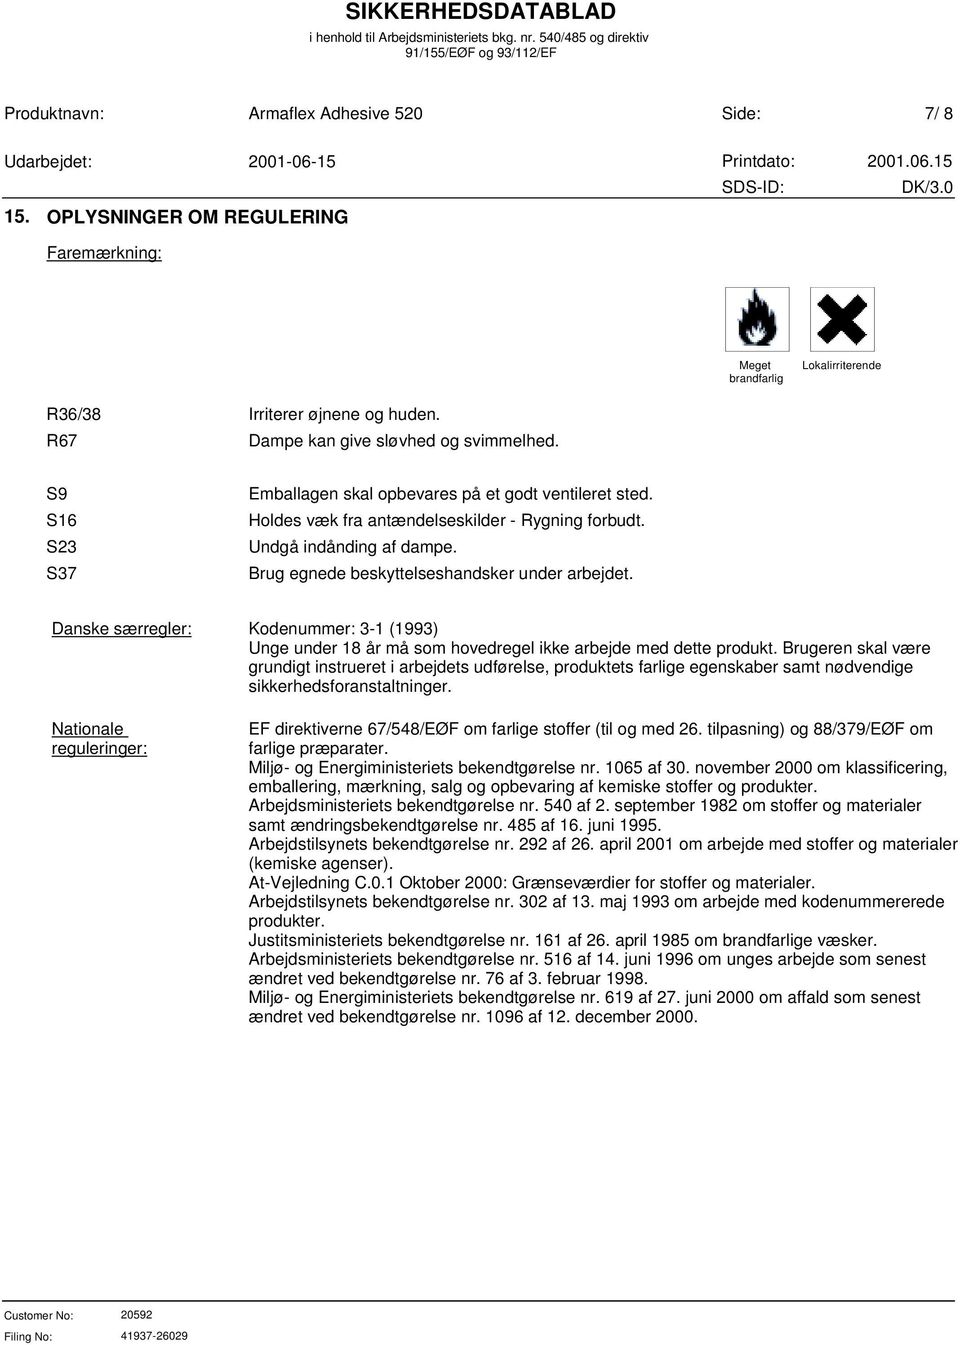 Danske særregler: Nationale reguleringer: Kodenummer: 3-1 (1993) Unge under 18 år må som hovedregel ikke arbejde med dette produkt.